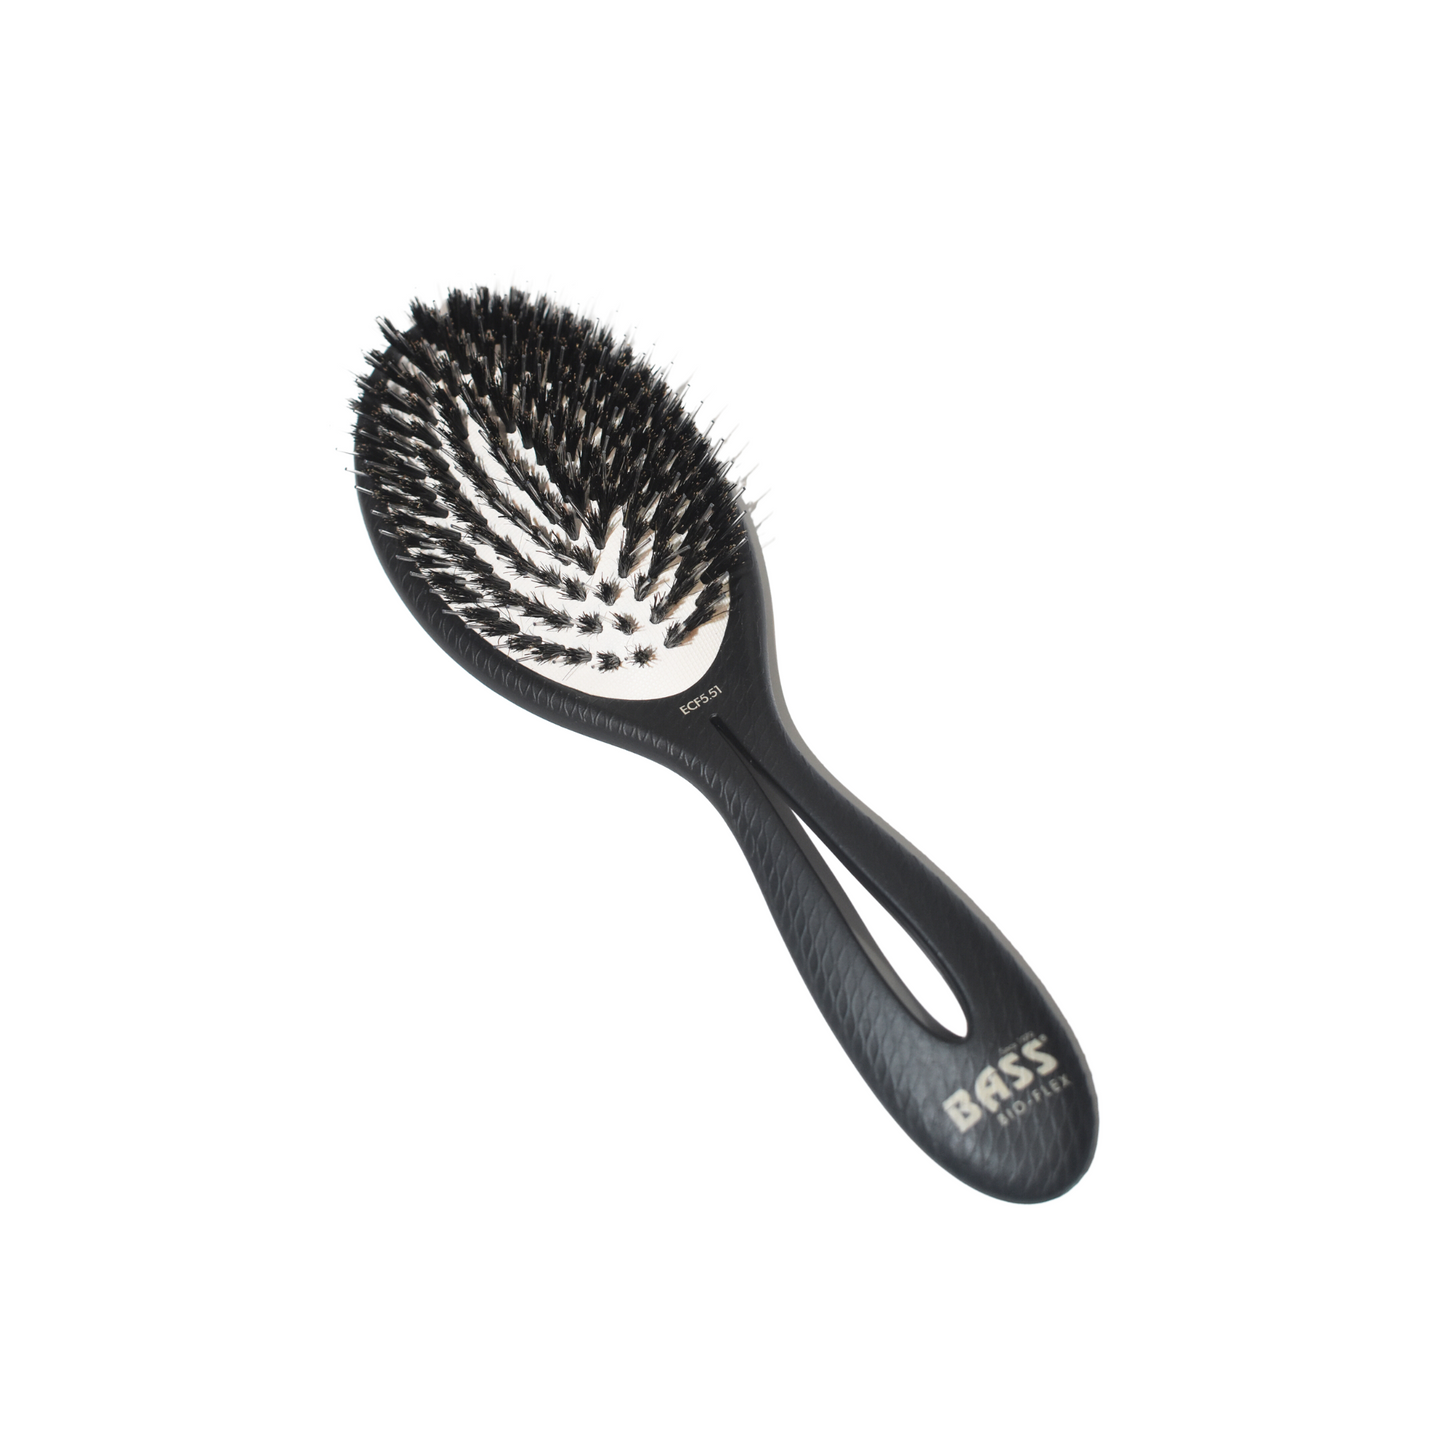 Bass Brushes BIO-FLEX Shine Hair Brush - Black Bristles (Black)